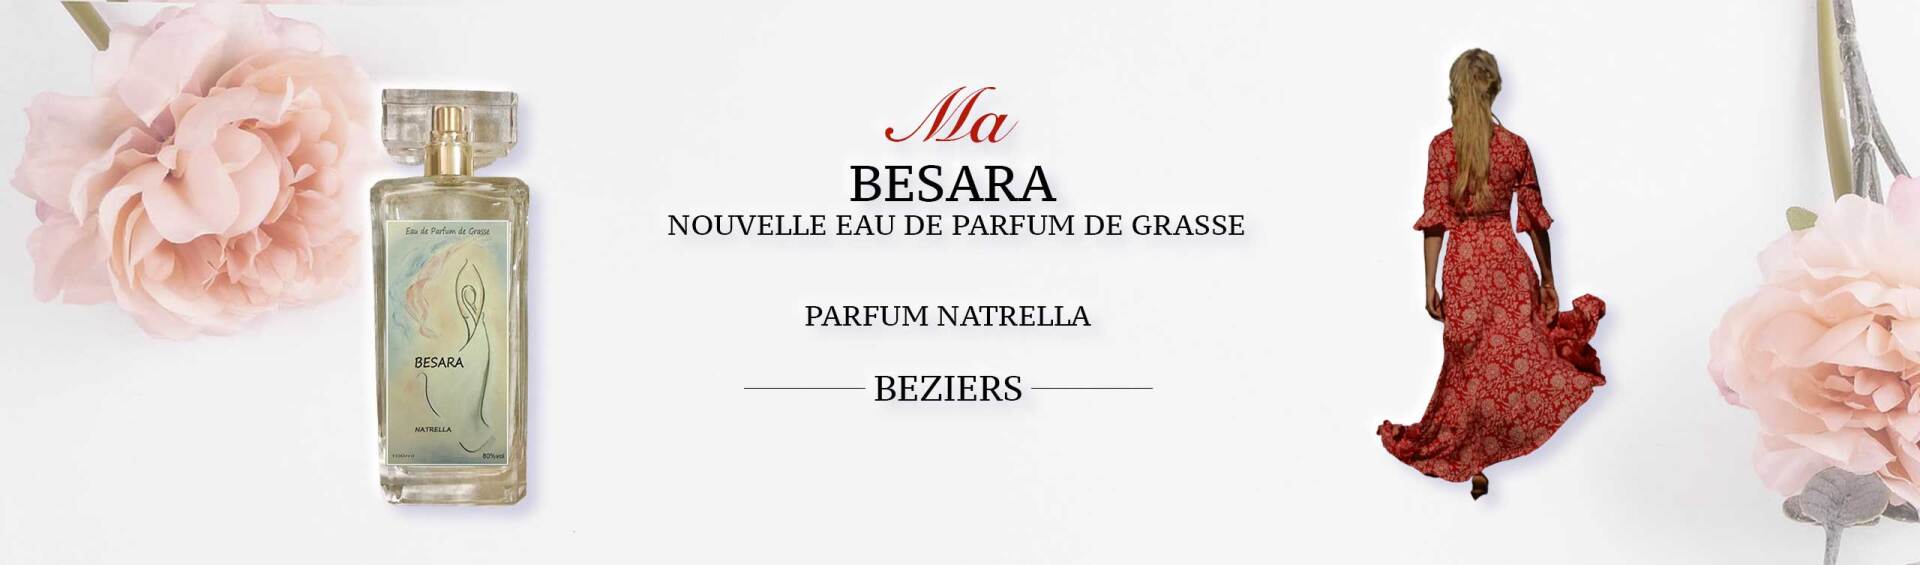 Bandeau promotionnel pour le parfum BESARA